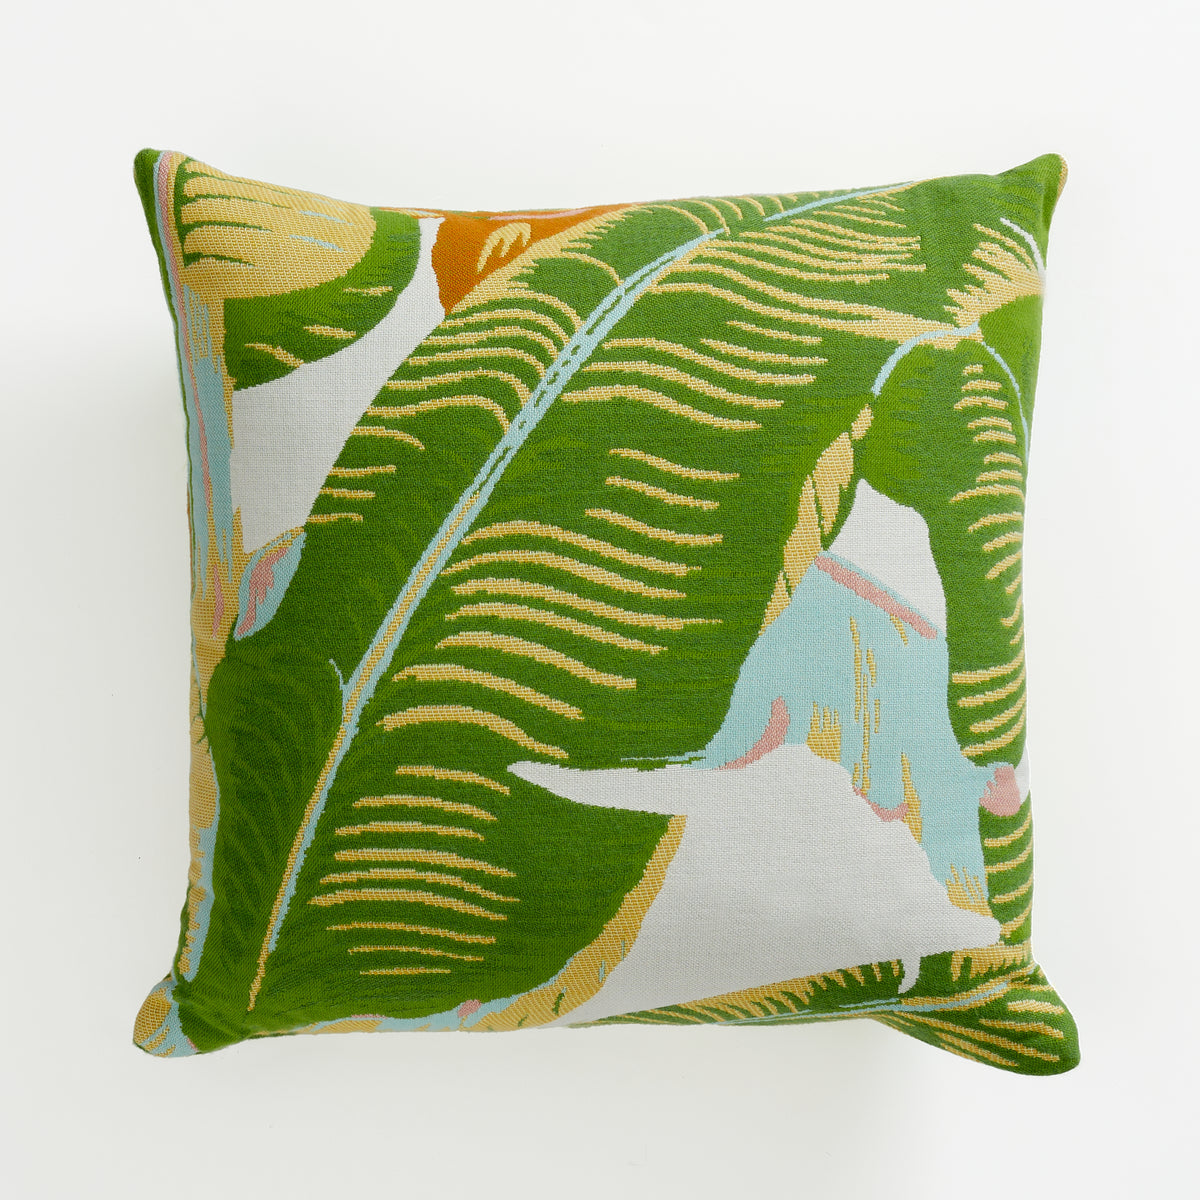 Martinique® Sunbrella® Pillow